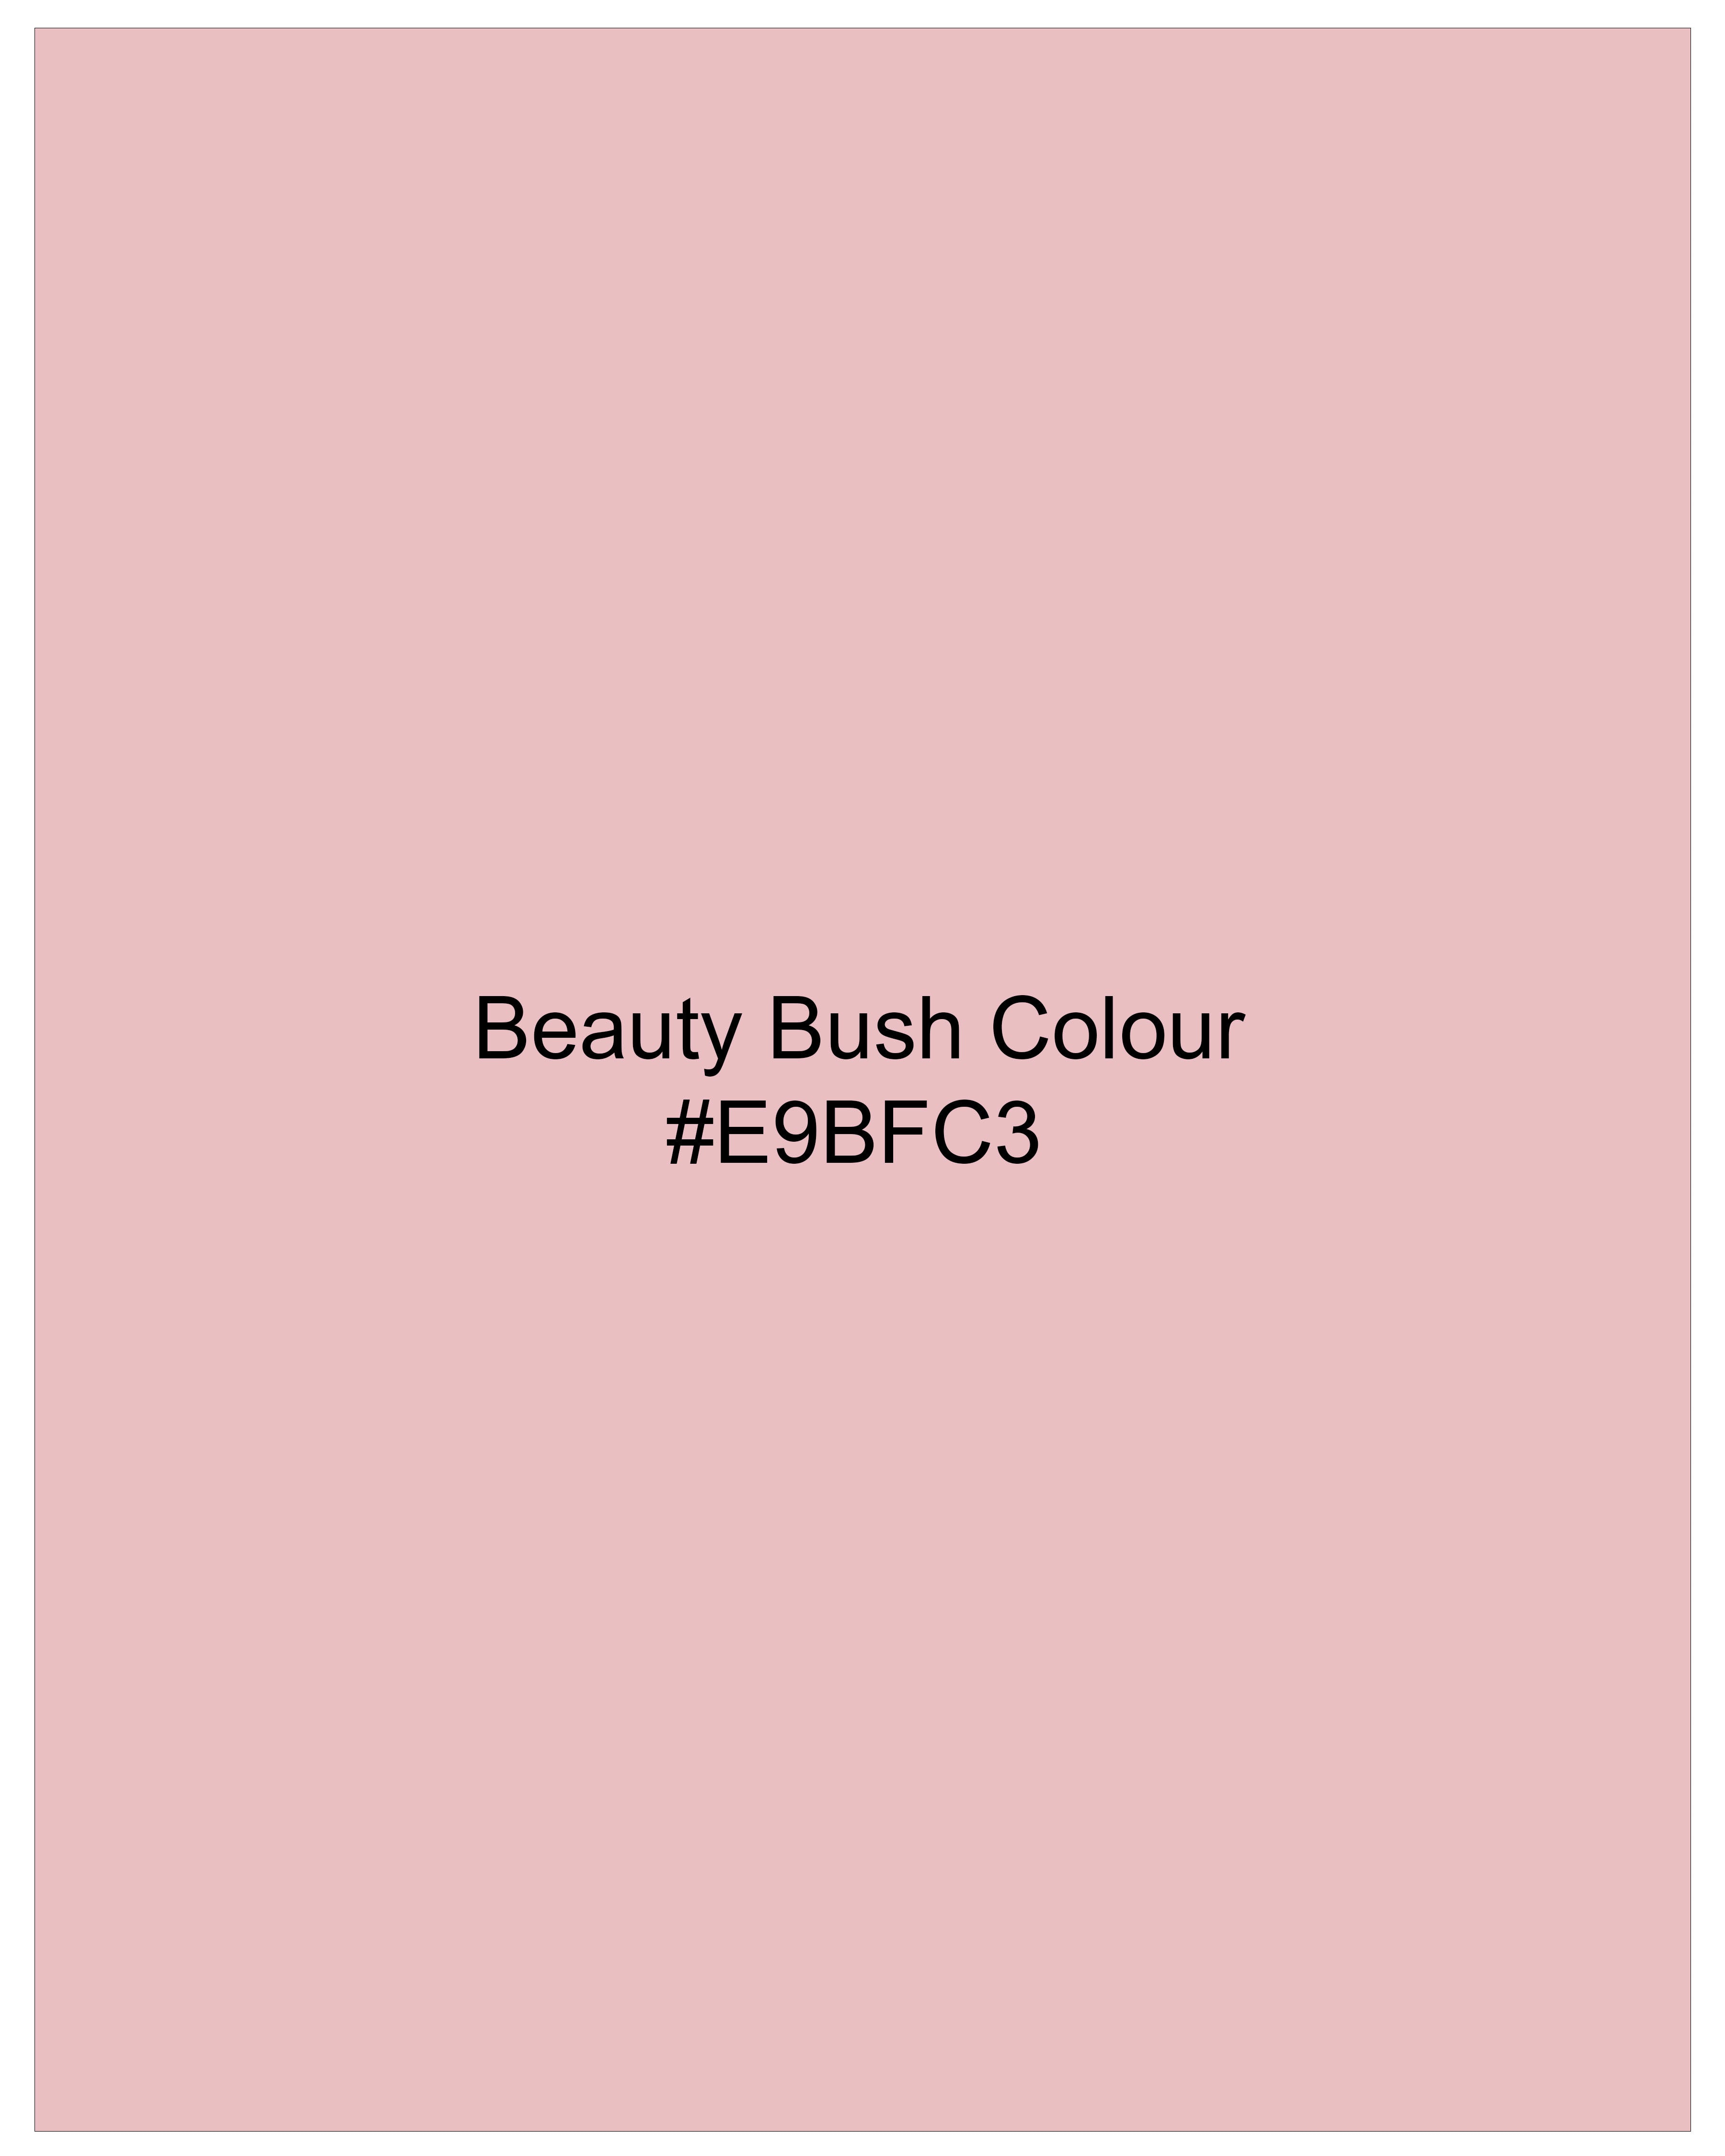 Beauty Bush Pink Bandhgala Designer Blazer BL2549-D137-36, BL2549-D137-38, BL2549-D137-40, BL2549-D137-42, BL2549-D137-44, BL2549-D137-46, BL2549-D137-48, BL2549-D137-50, BL2549-D137-54, BL2549-D137-54, BL2549-D137-56, BL2549-D137-58, BL2549-D137-60